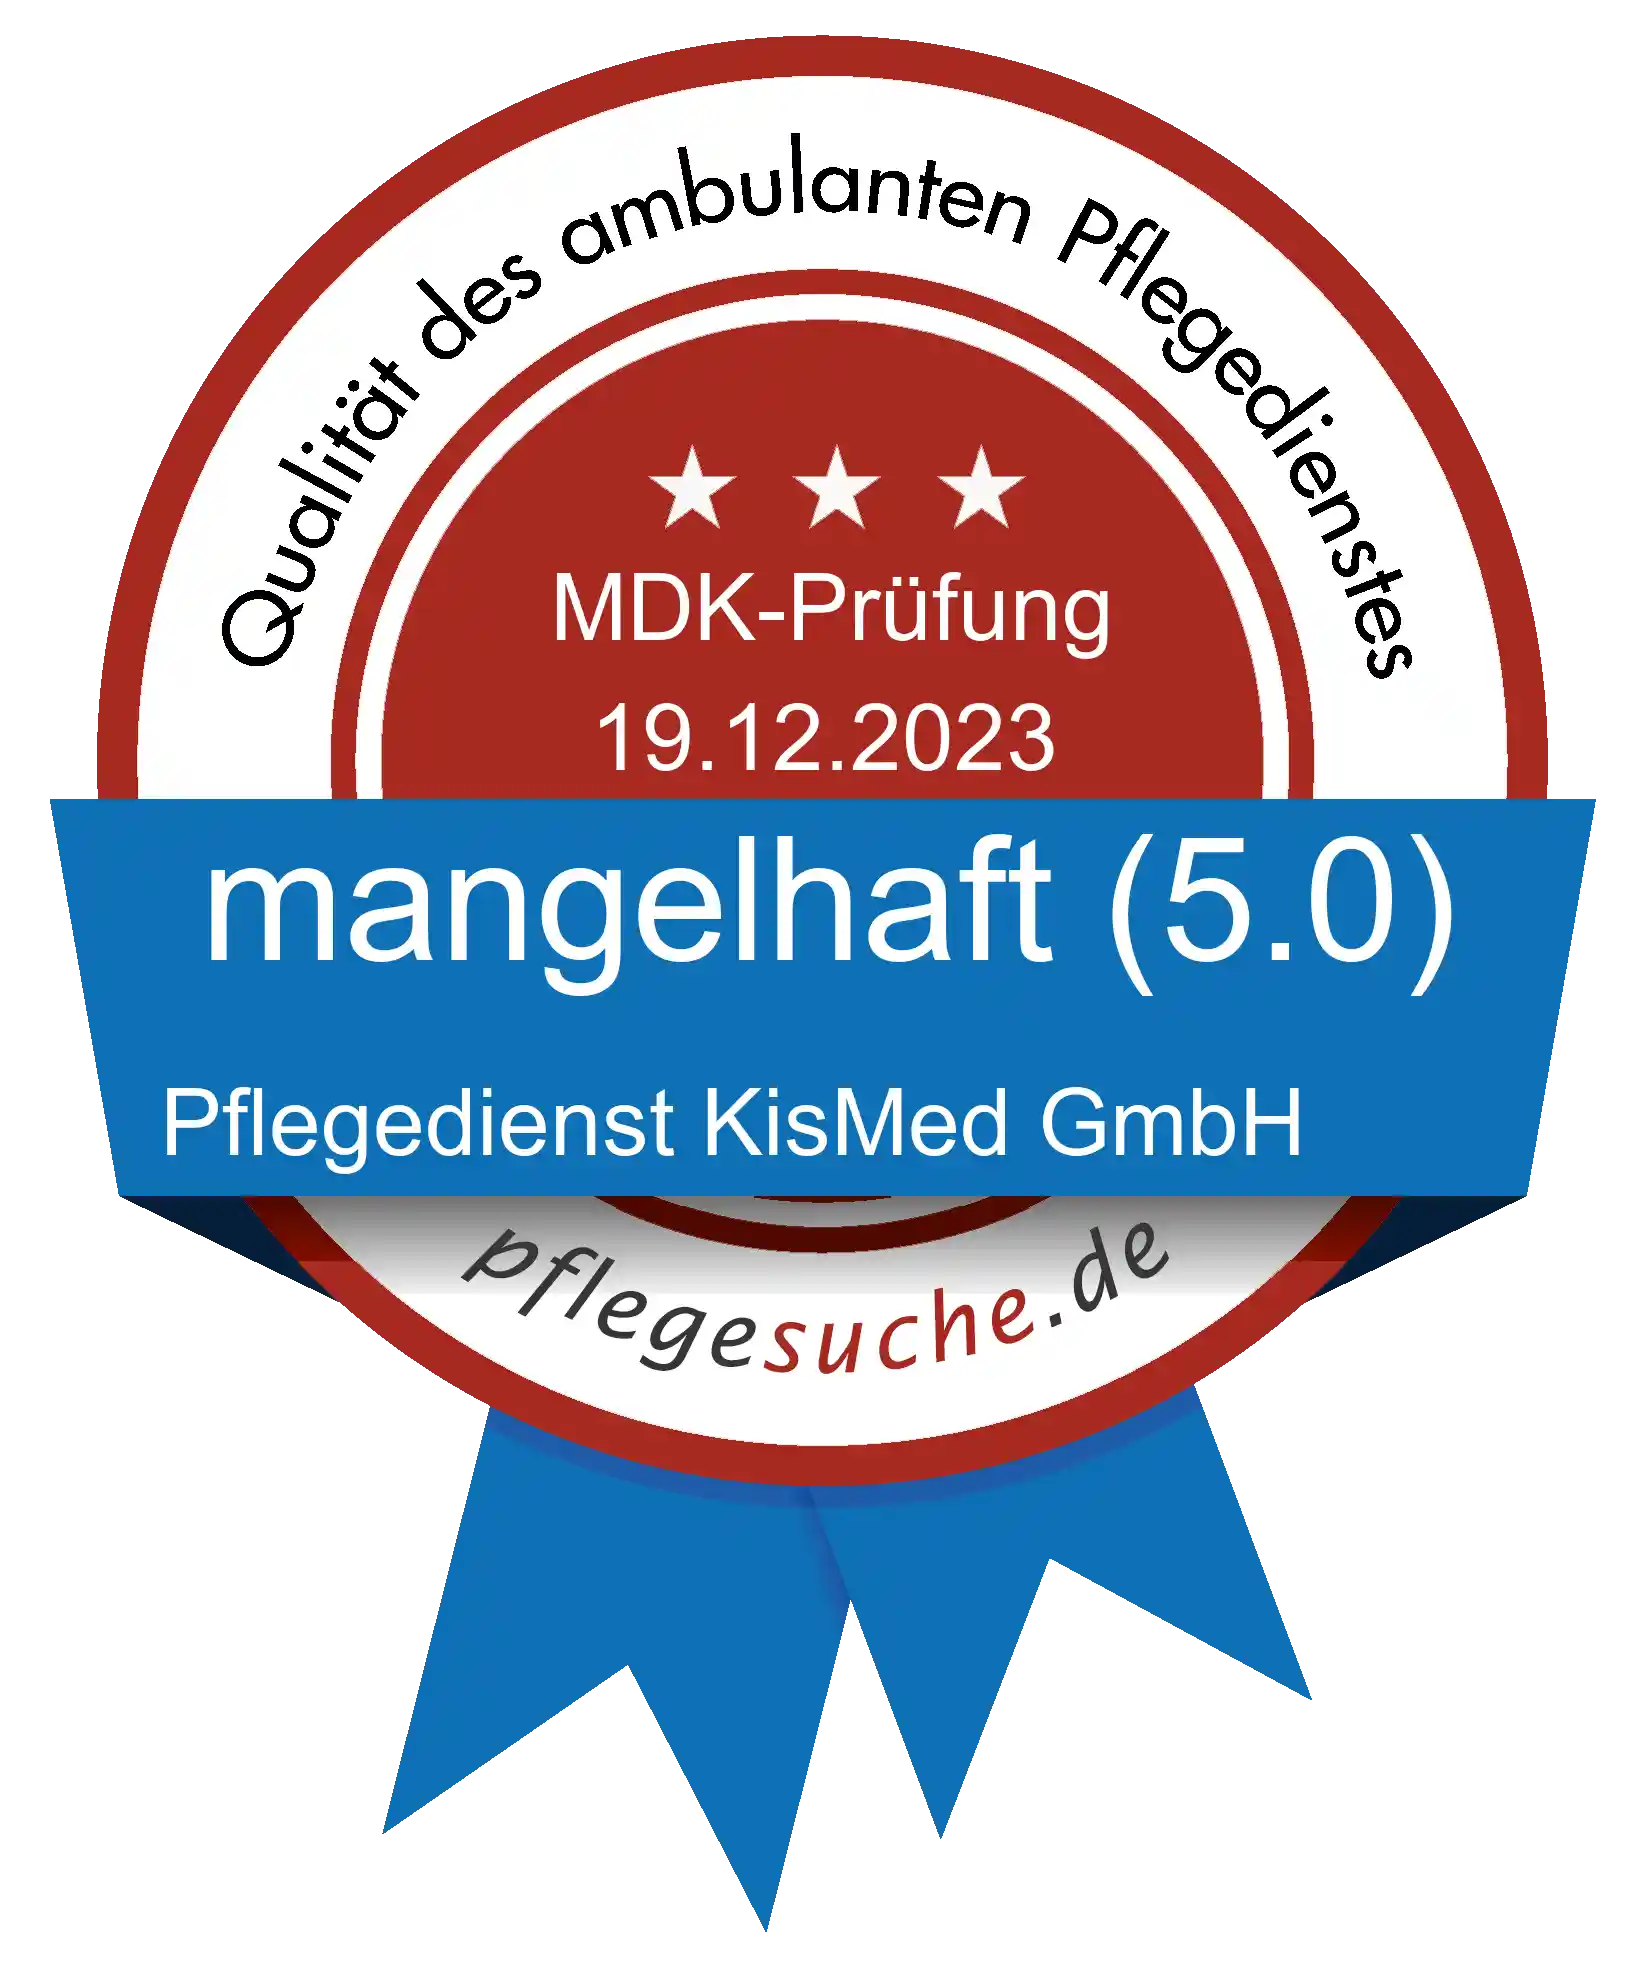 Siegel Benotung: Pflegedienst KisMed GmbH